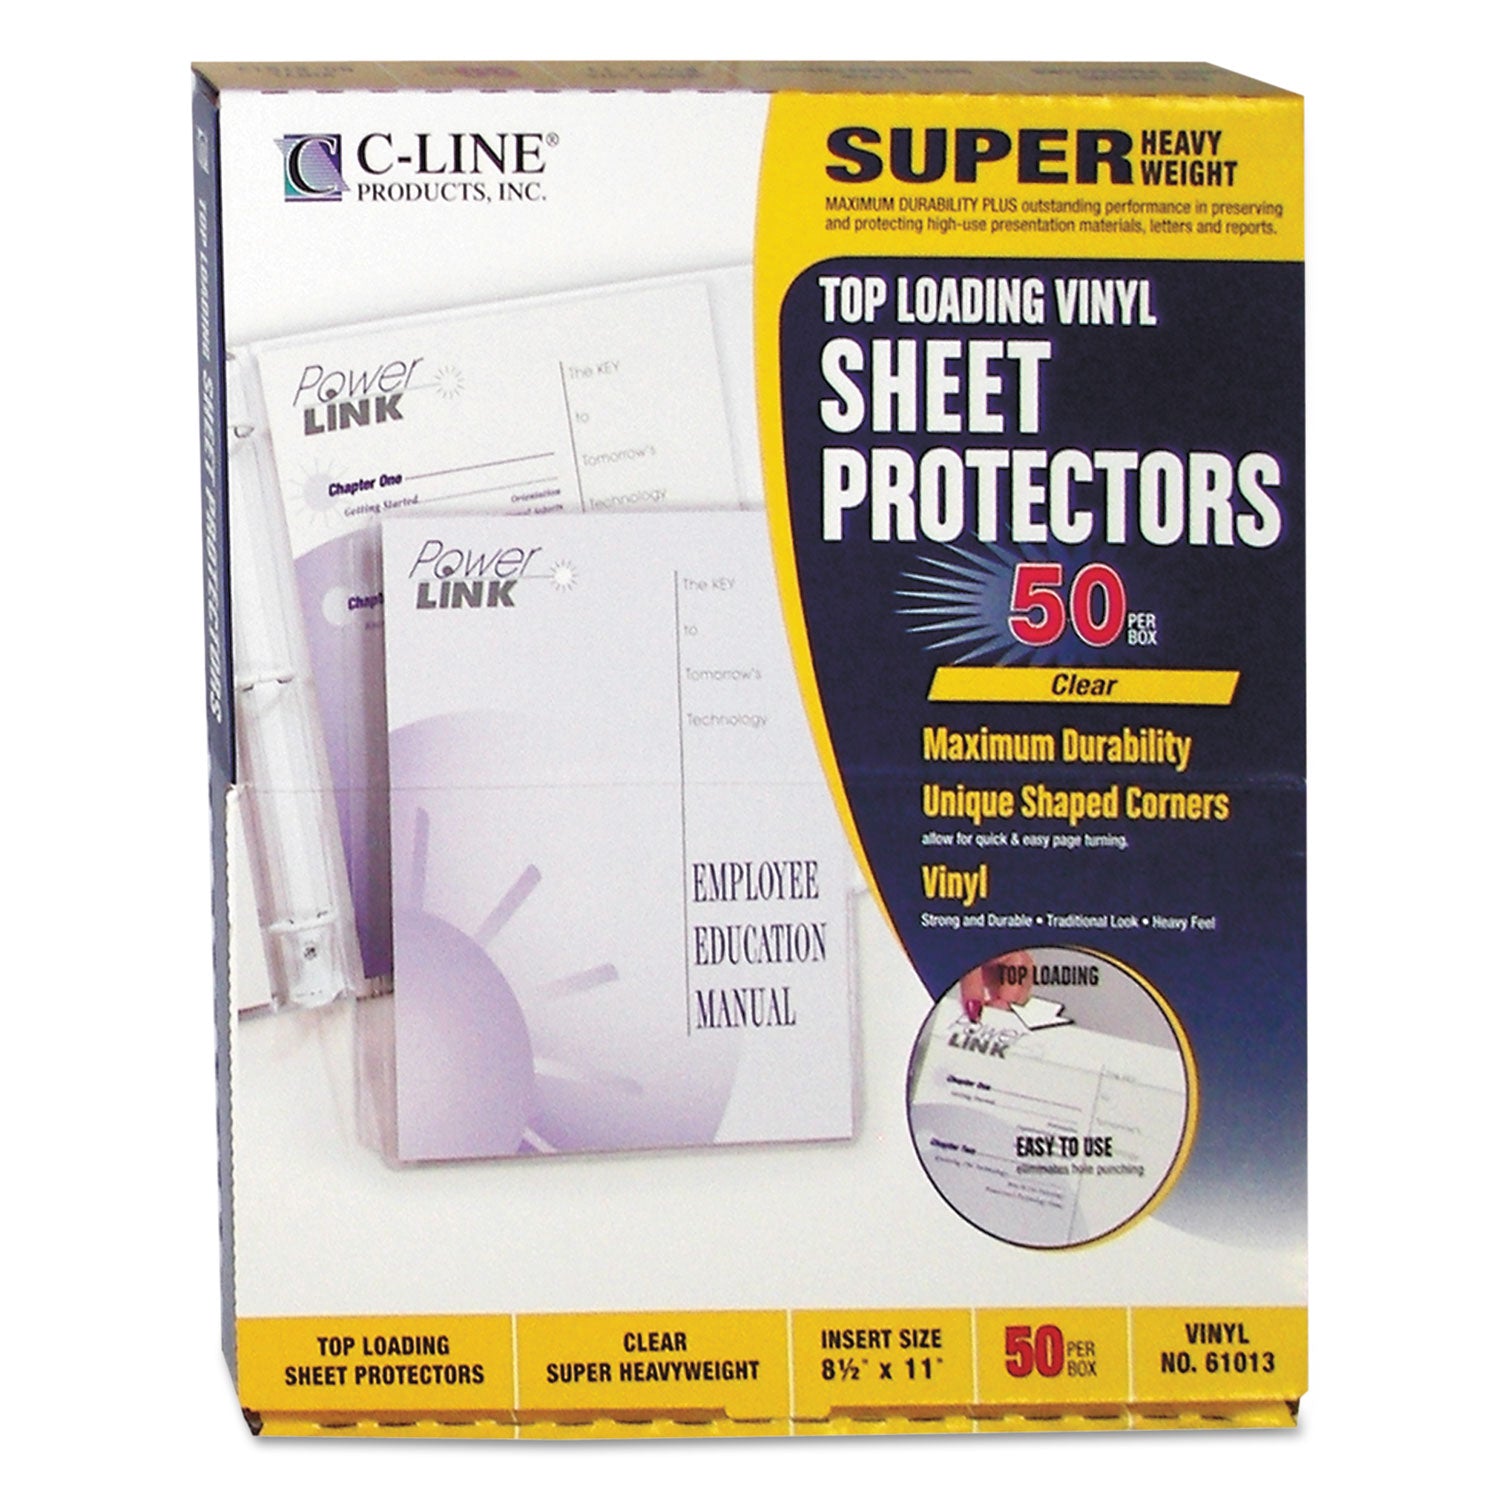 Super Heavyweight Vinyl Sheet Protectors, Clear, 2 Sheets, 11 x 8.5, 50/Box - 